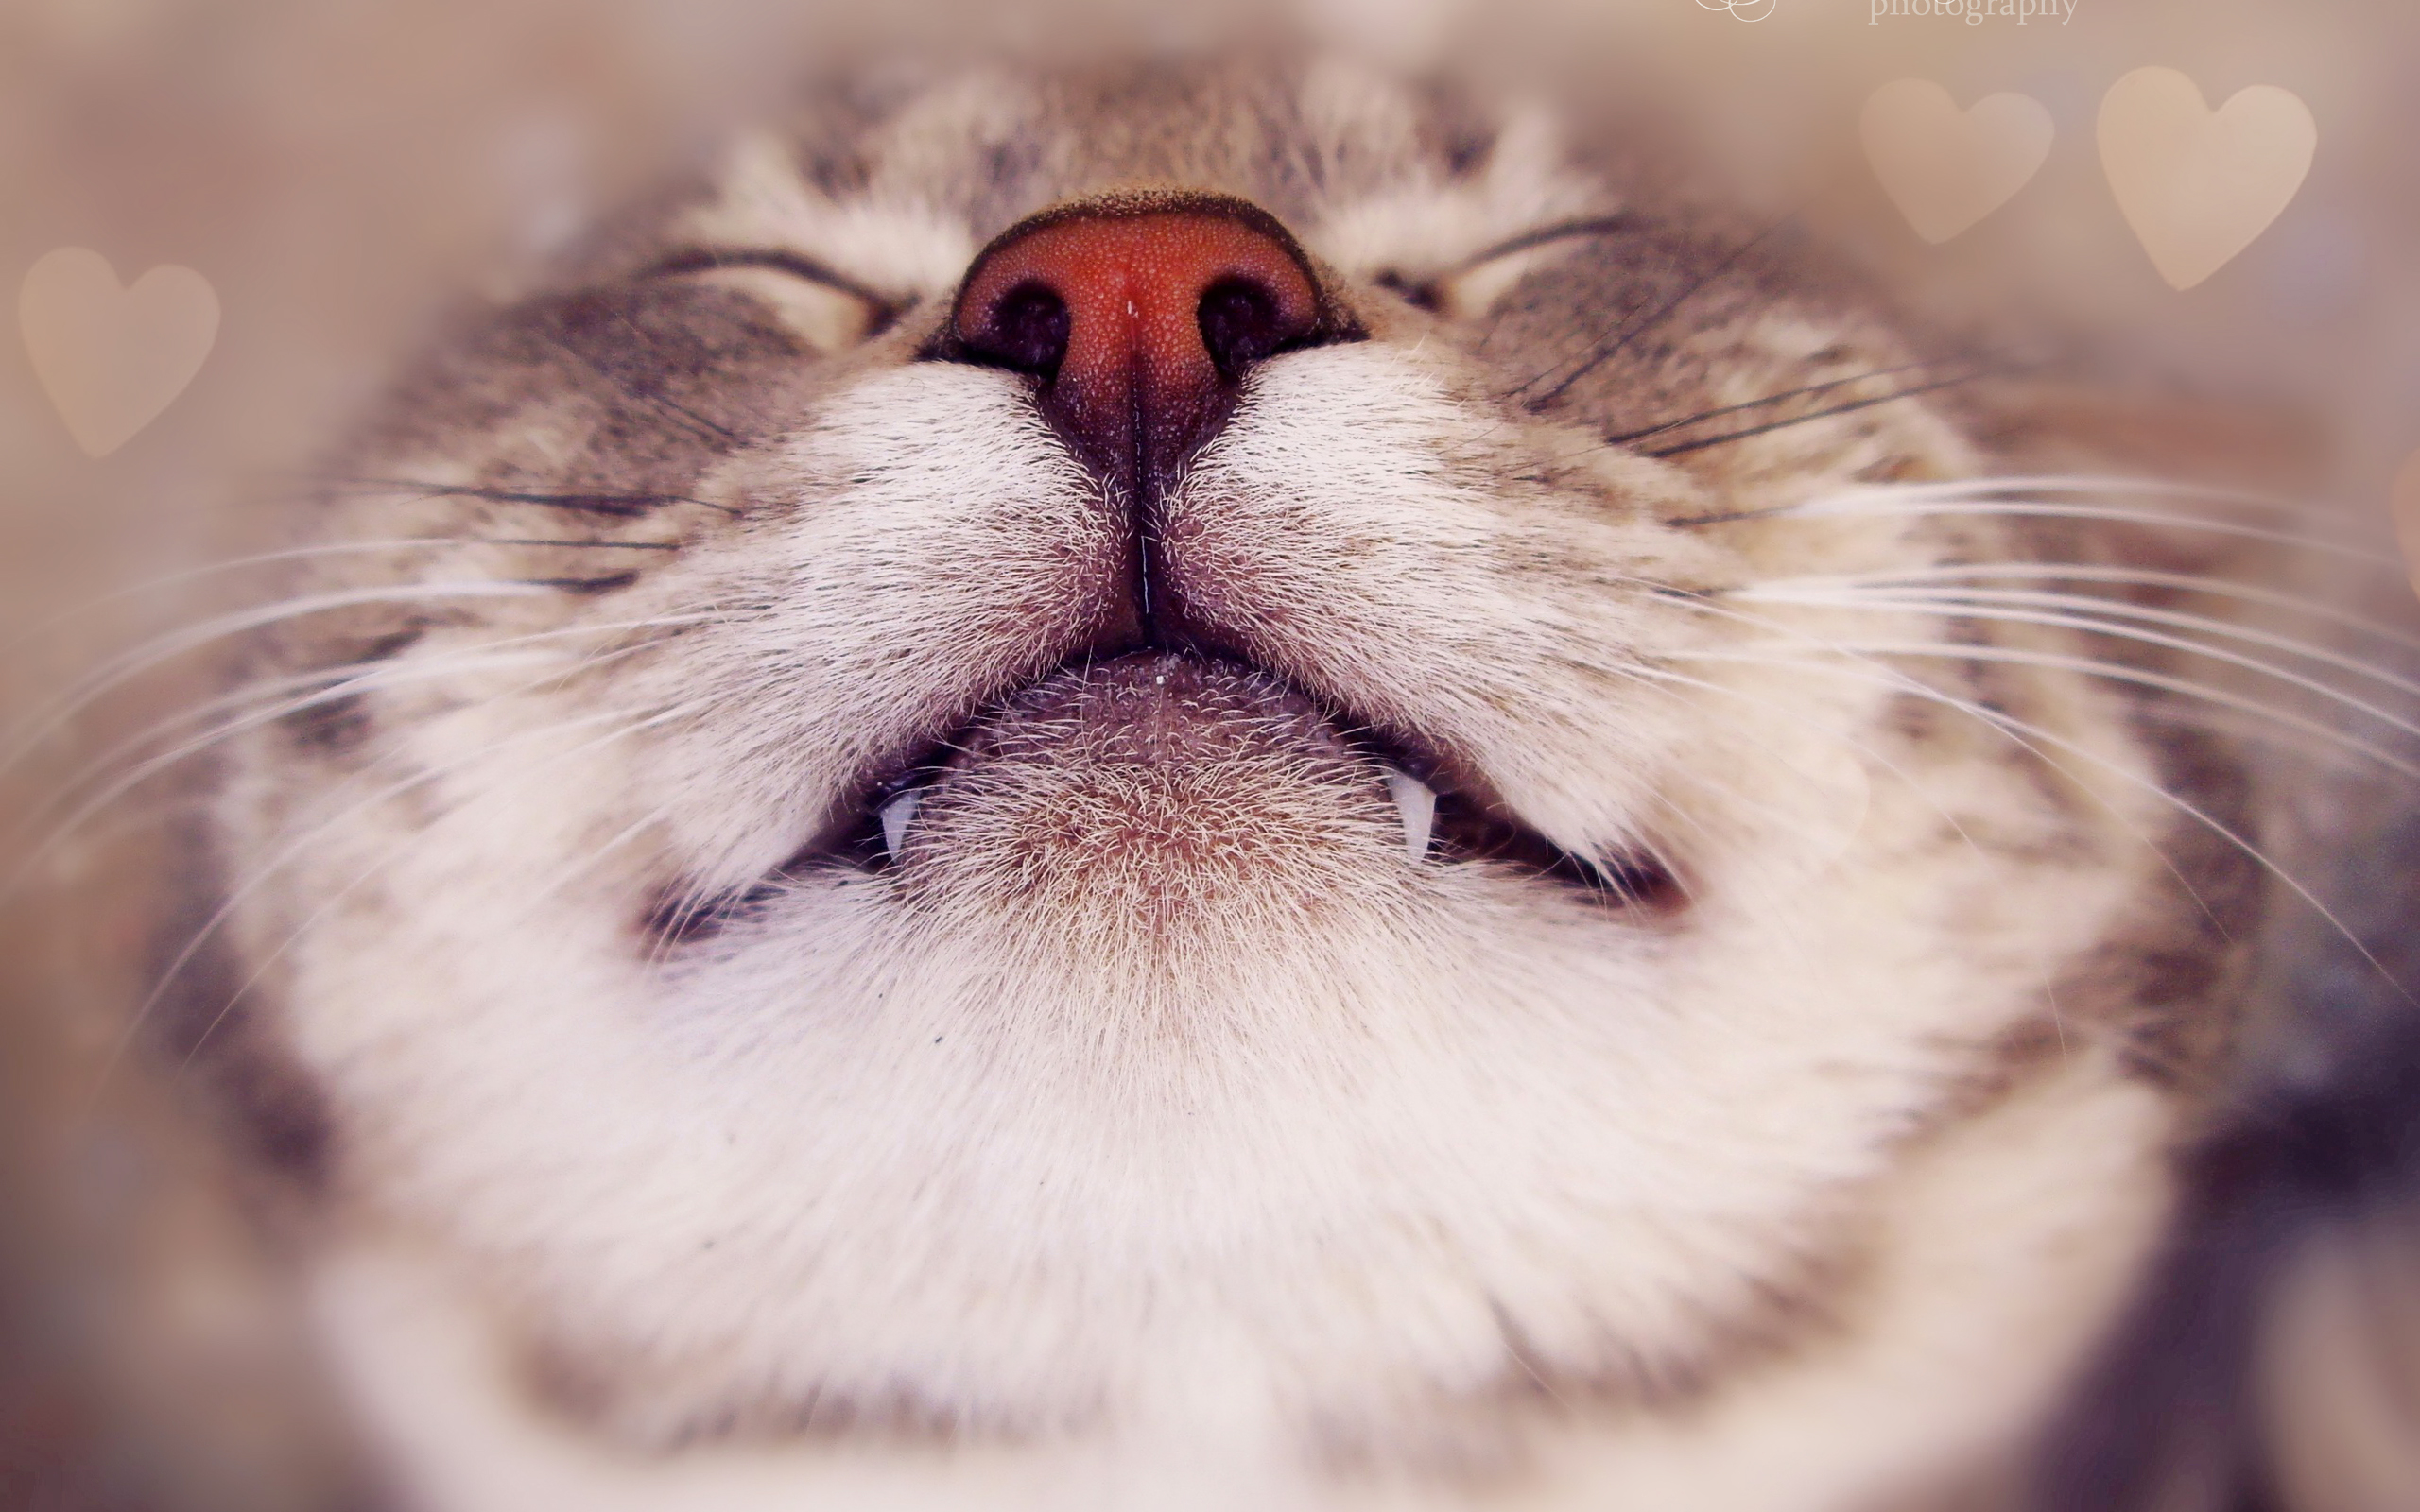 Sleepping Cute Cats Wallpapers - Cat Wallpaper Pc - HD Wallpaper 